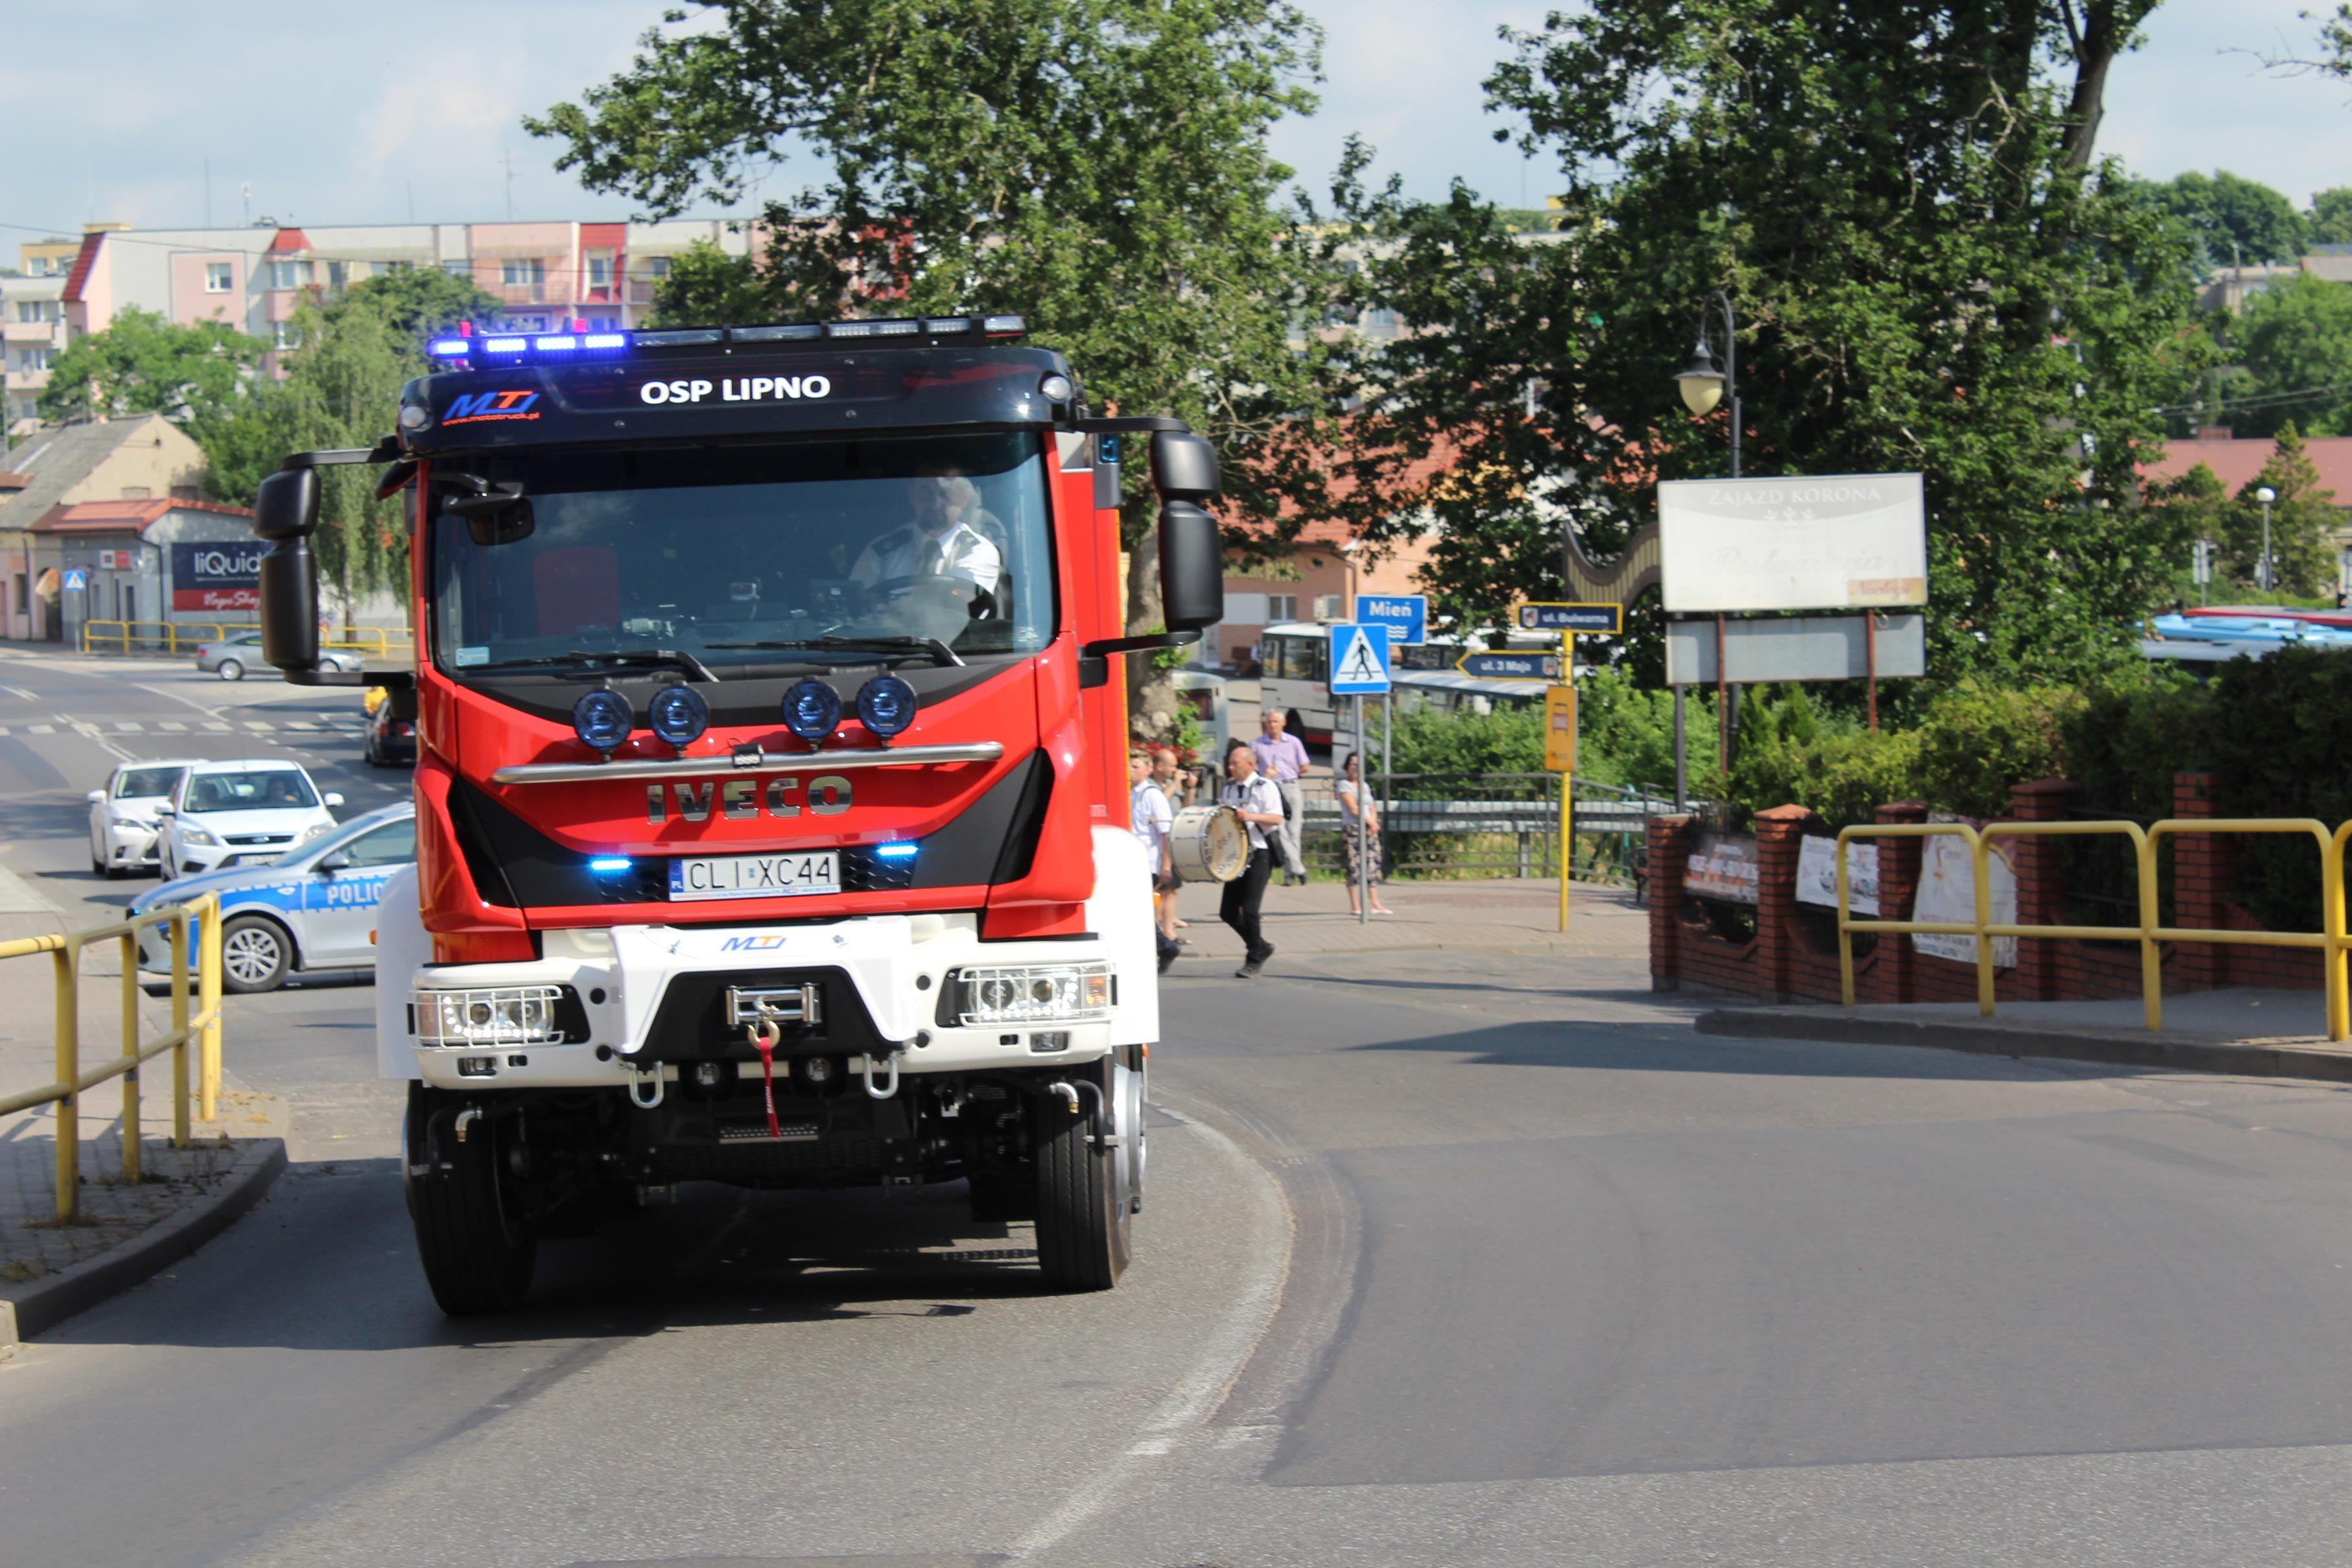 Zdj. nr. 8. Jubileusz 140-lecia Ochotniczej Straży Pożarnej w Lipnie - 27 czerwca 2021 r.